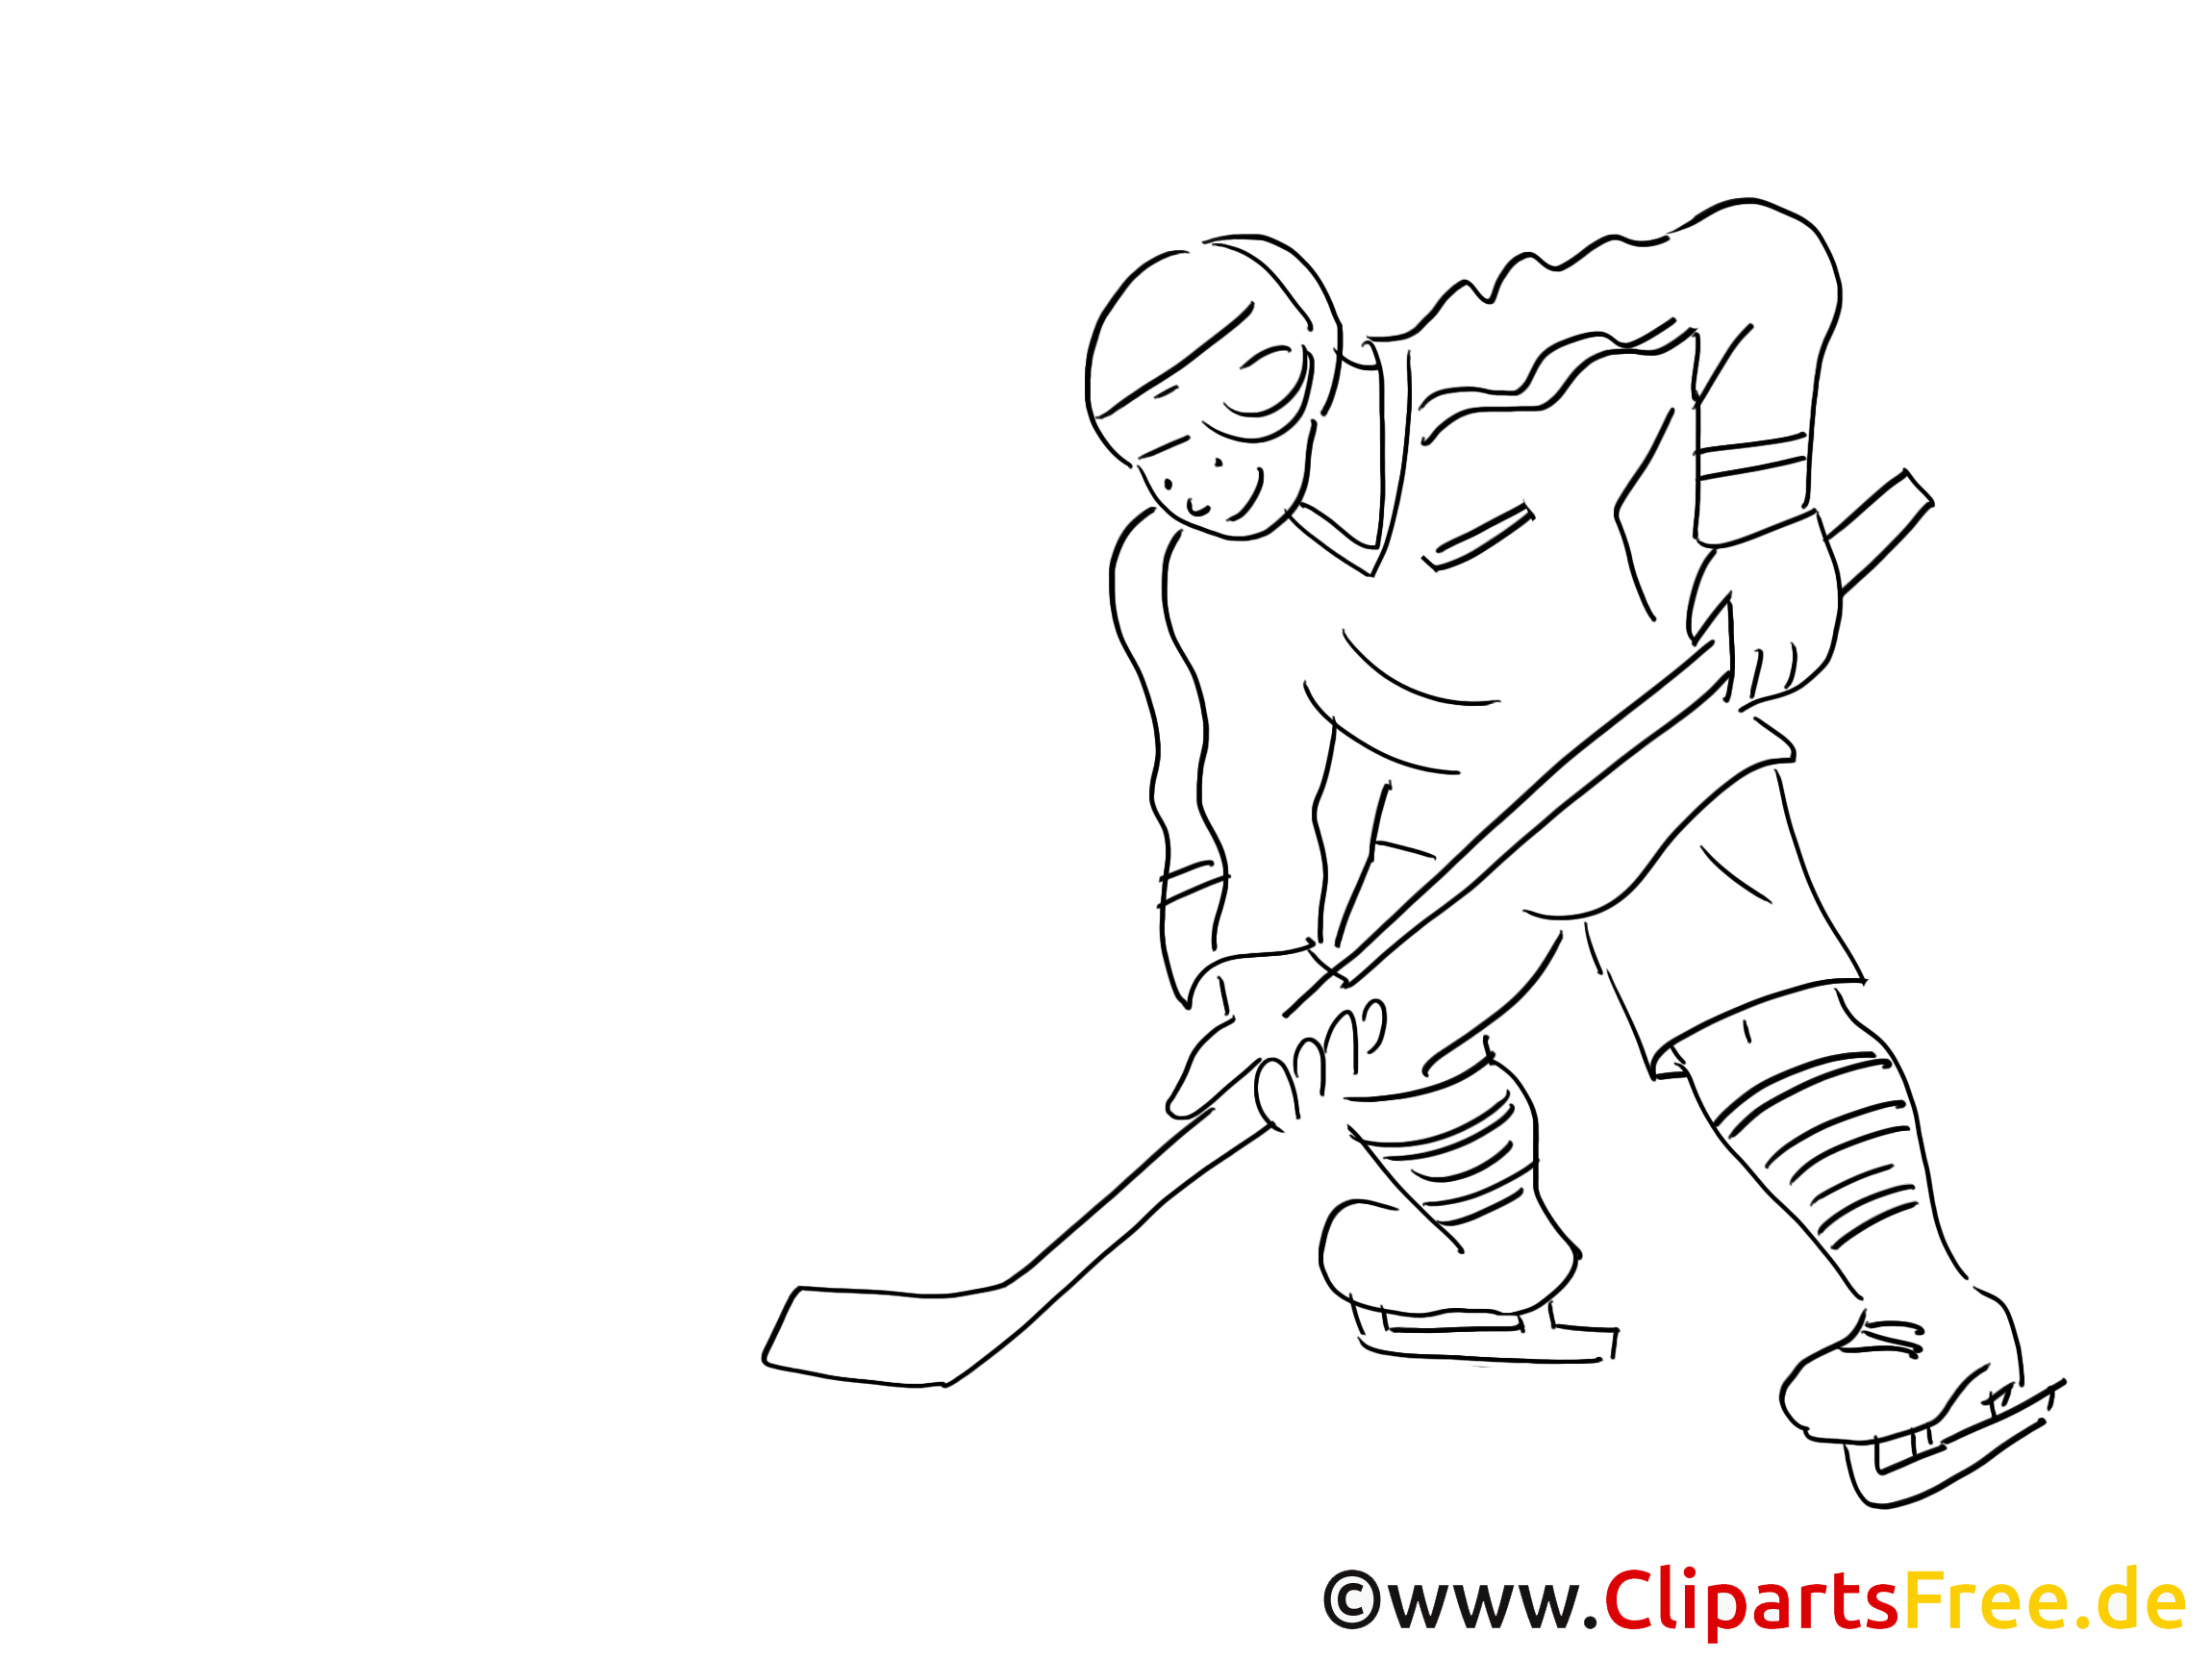 Coloriage hockey illustration à télécharger